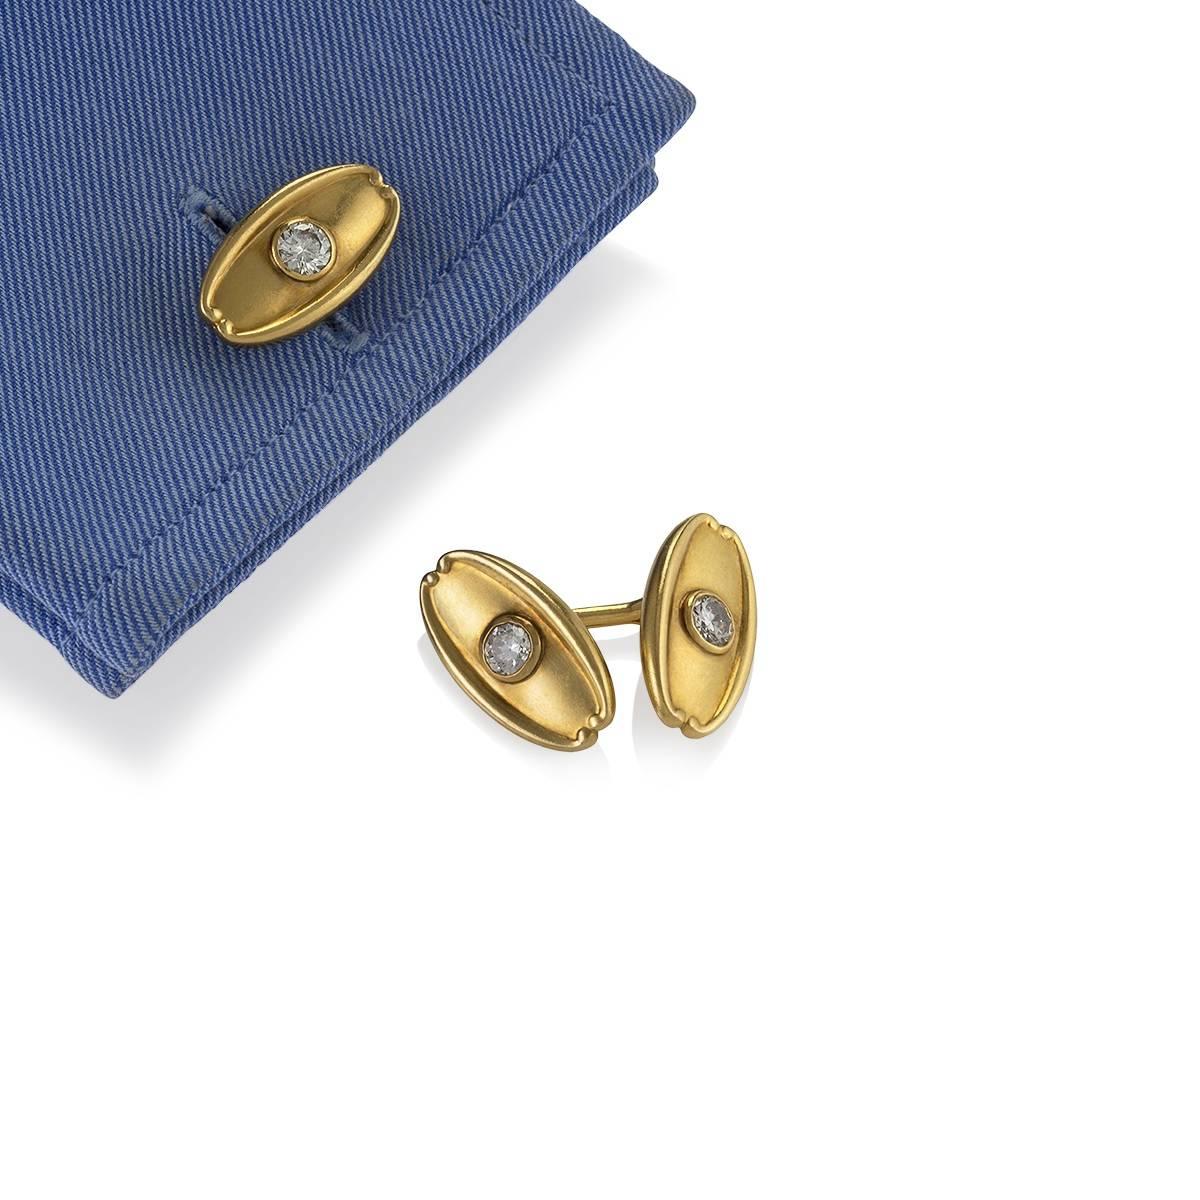 Une paire de boutons de manchette anciens en or 18 carats avec des diamants par Tiffany & Co. Les lourds boutons de manchette en forme de losange sont ornés de 4 diamants de taille européenne ancienne d'un poids total approximatif de 1,50 carat, de